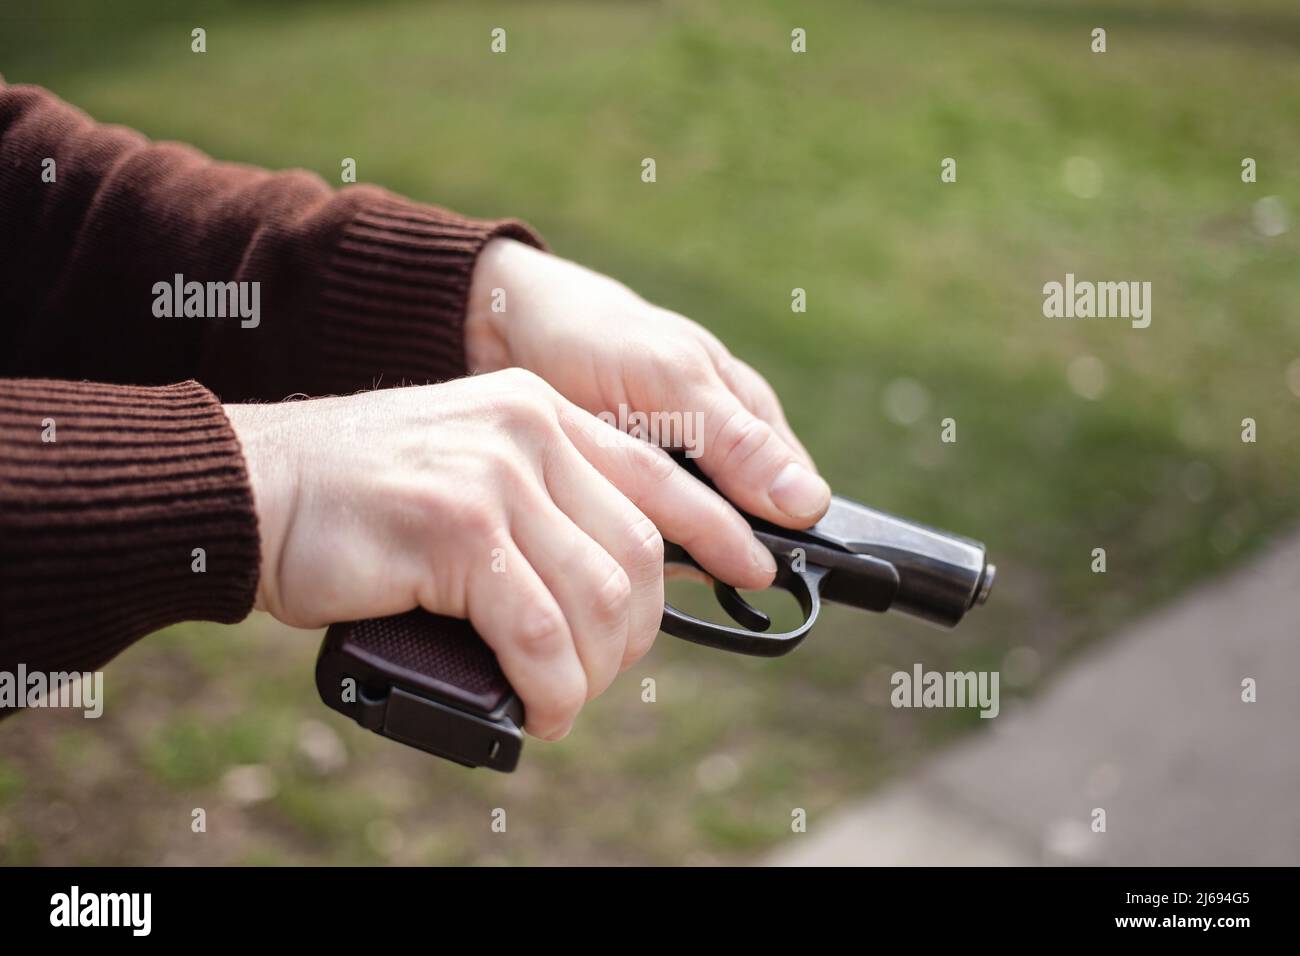 Un jeune homme charge un fusil contre une herbe verte. Armes à feu extérieur. Sport, passe-temps Banque D'Images